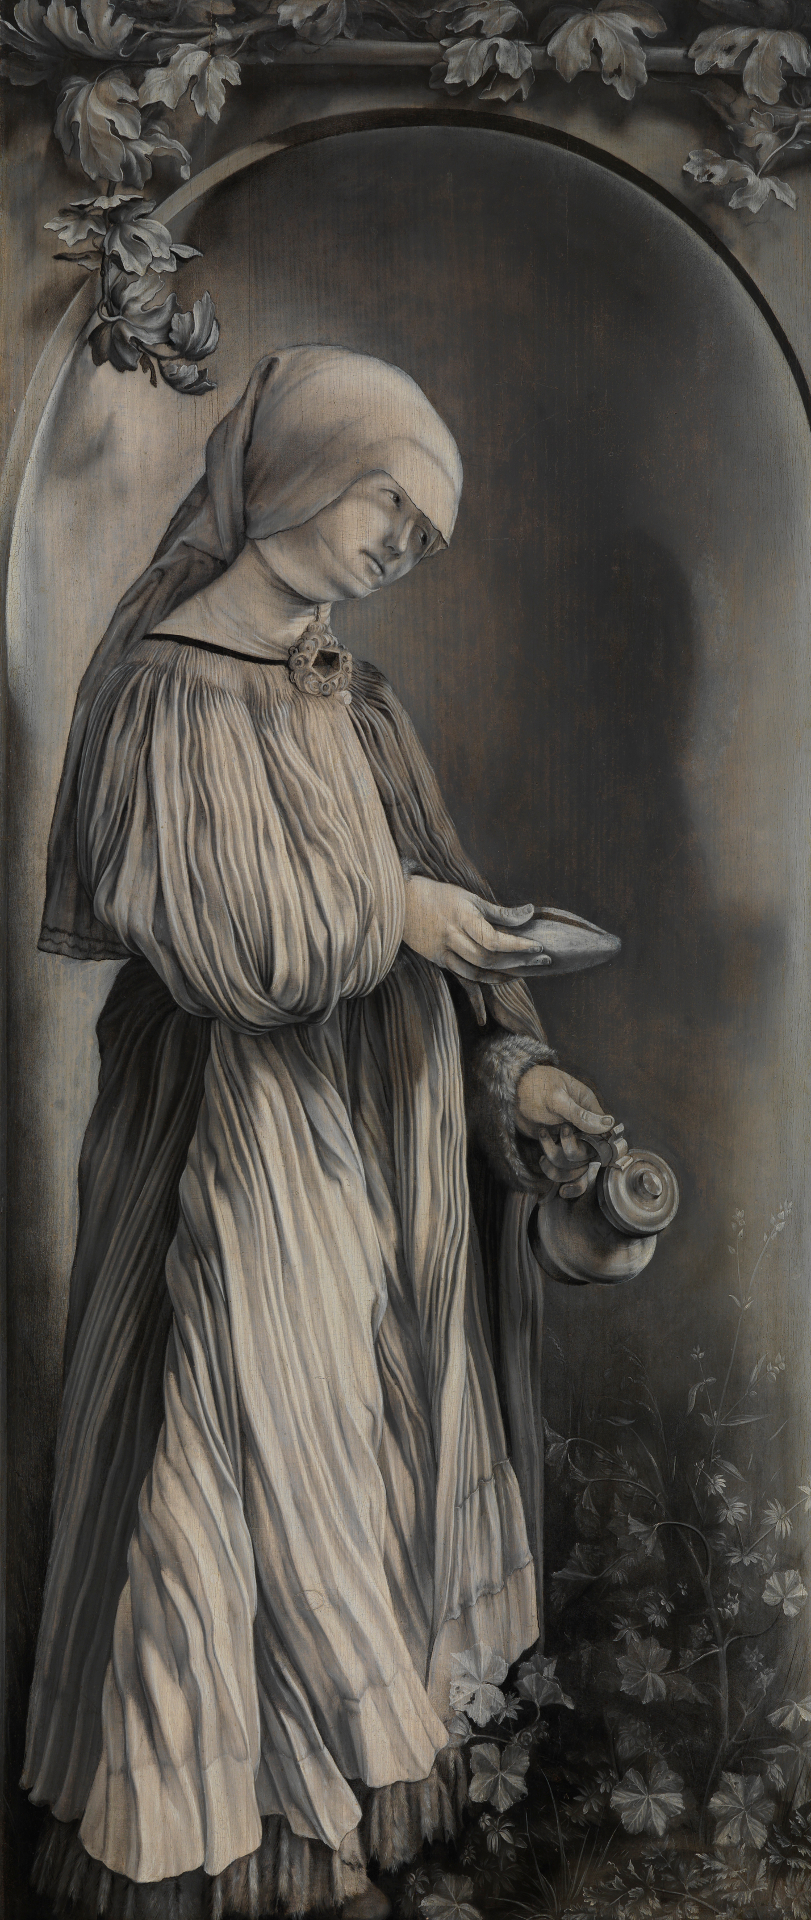 Grünewalds Heilige Elisabeth von Thüringen. Das Bildnis ist lediglich in Grautönen angefertigt. Die Heilige steht unter einemBogen und hält einen Krug in der Hand.